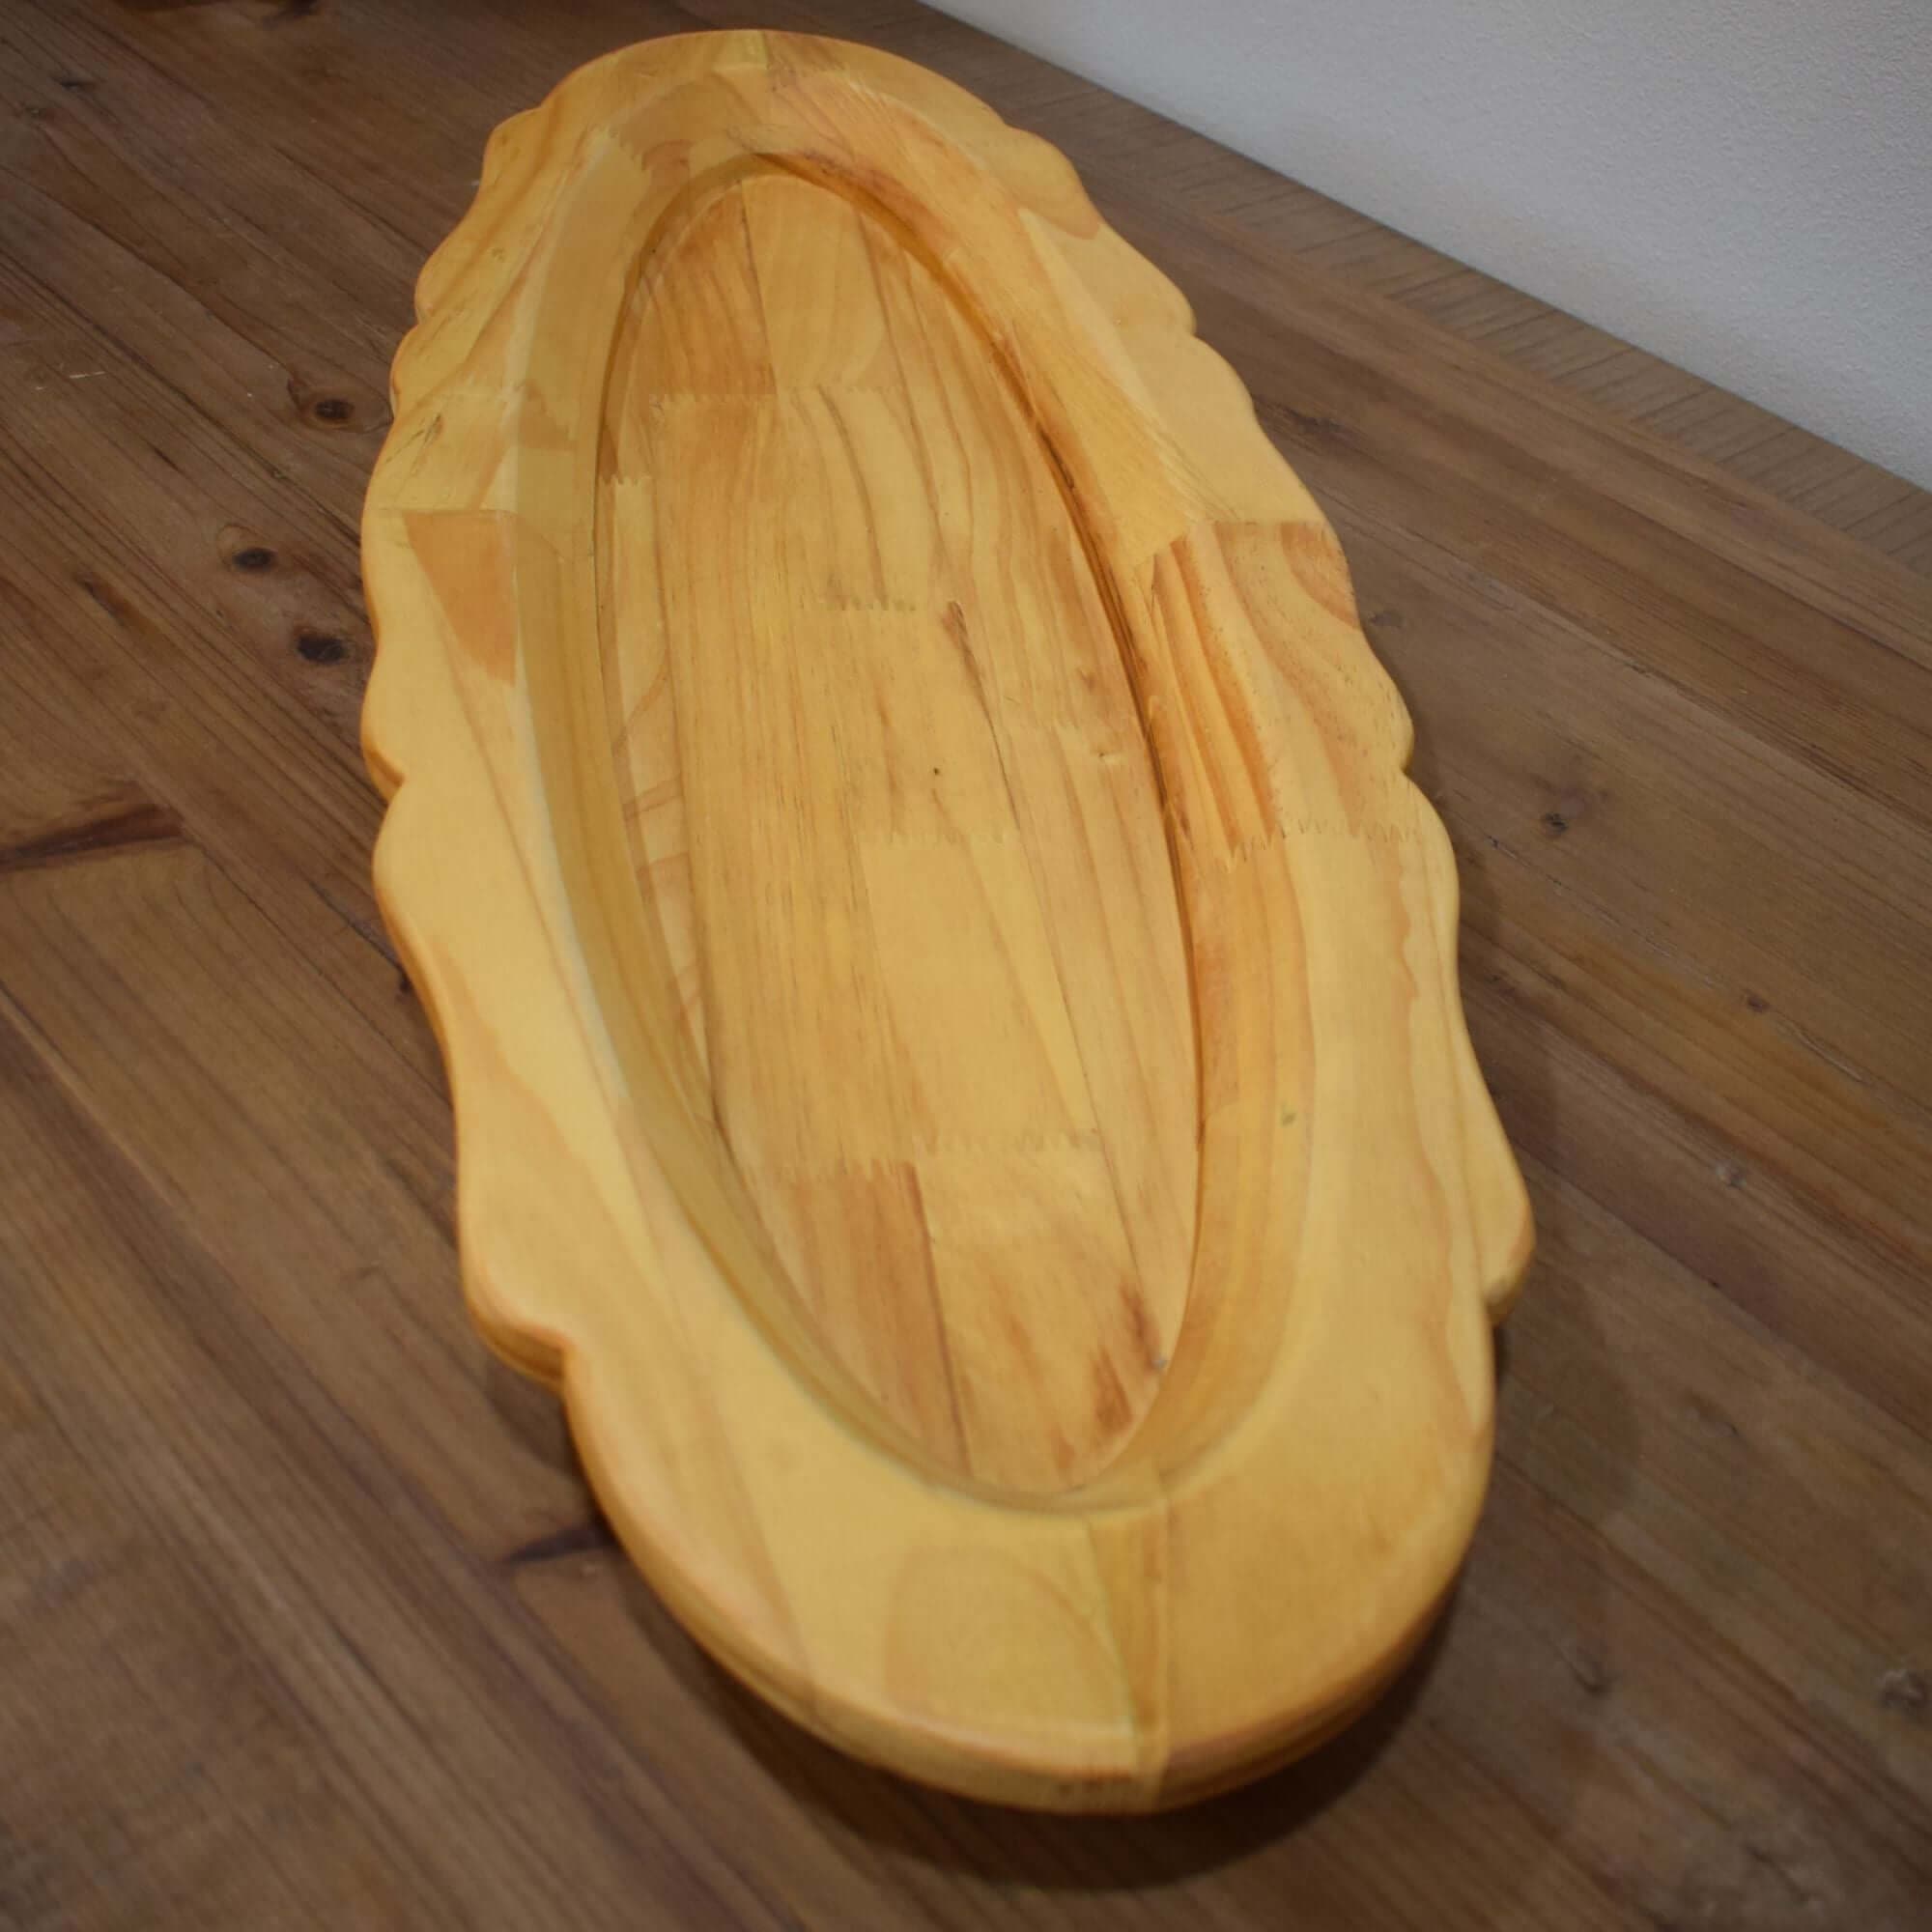 Small Oblong Wooden Serving Platter